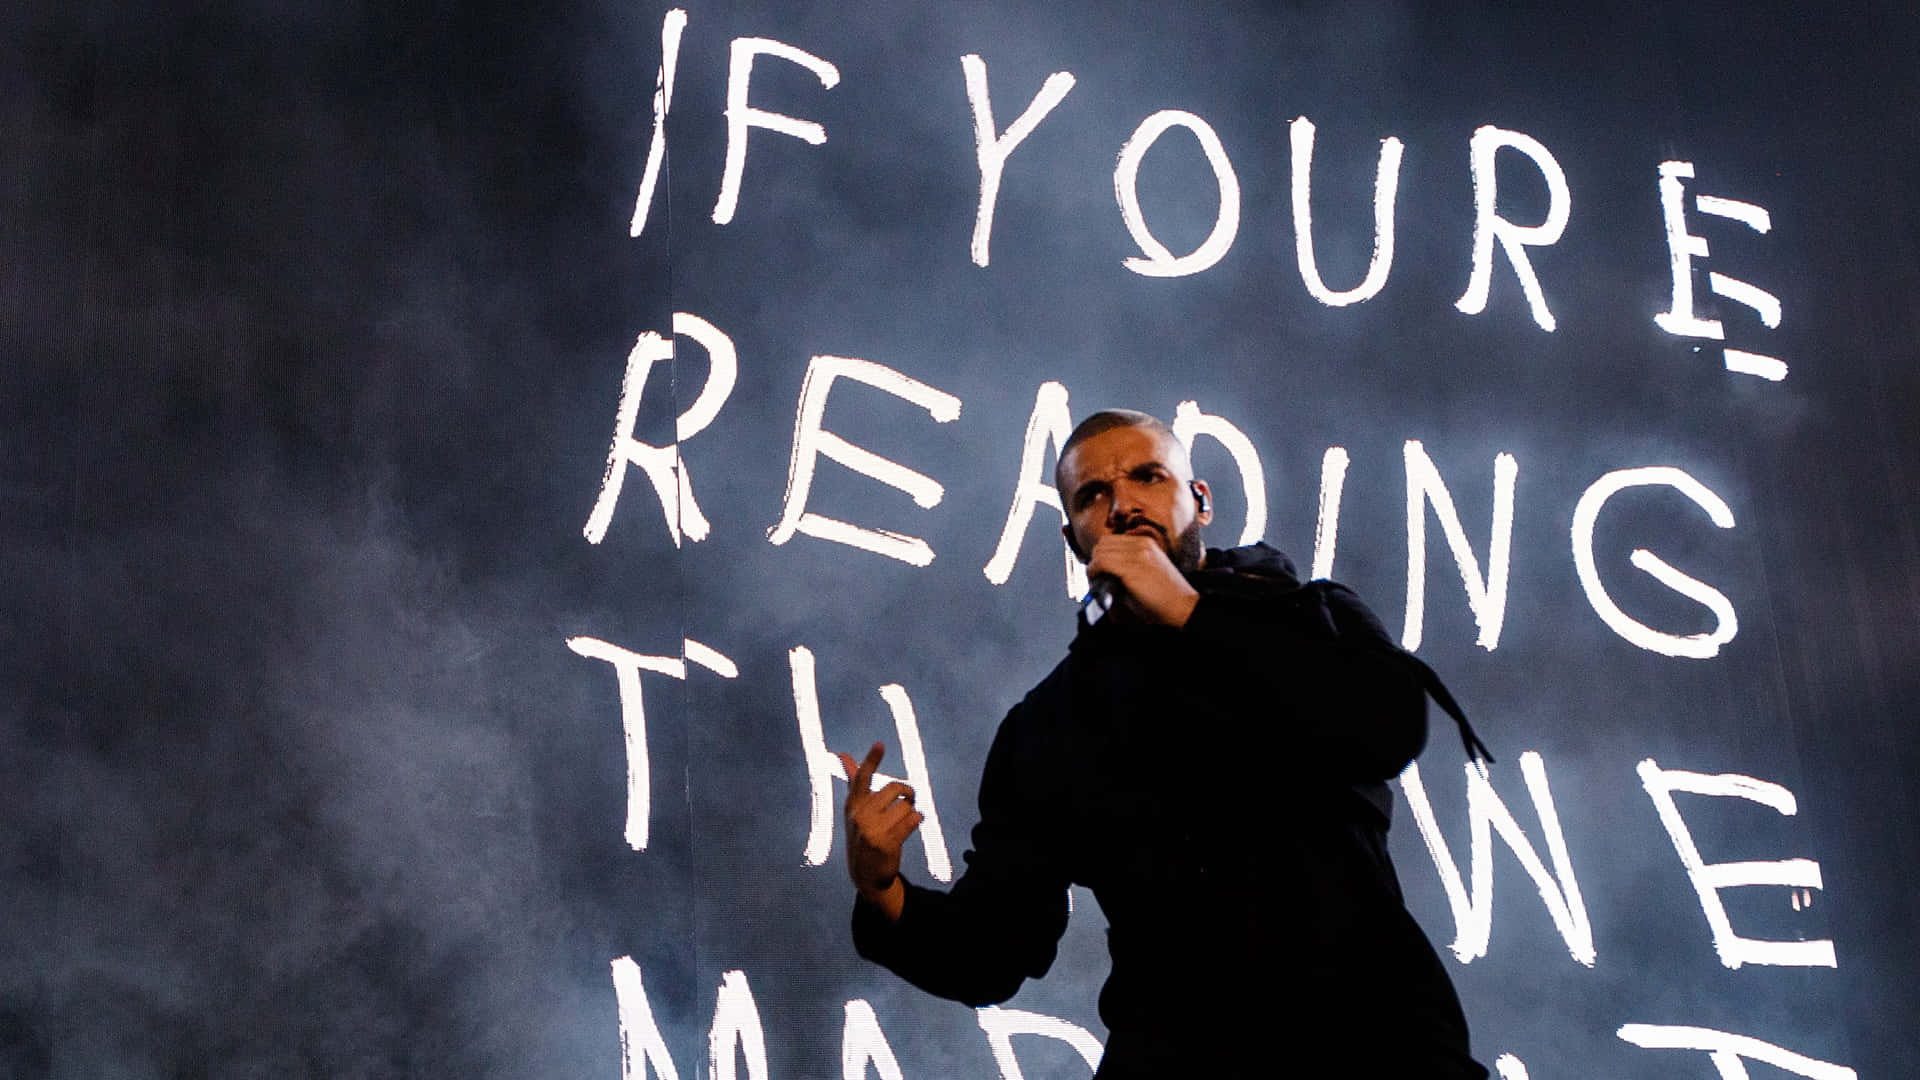 Se tjekke Drake's nye album ud Wallpaper